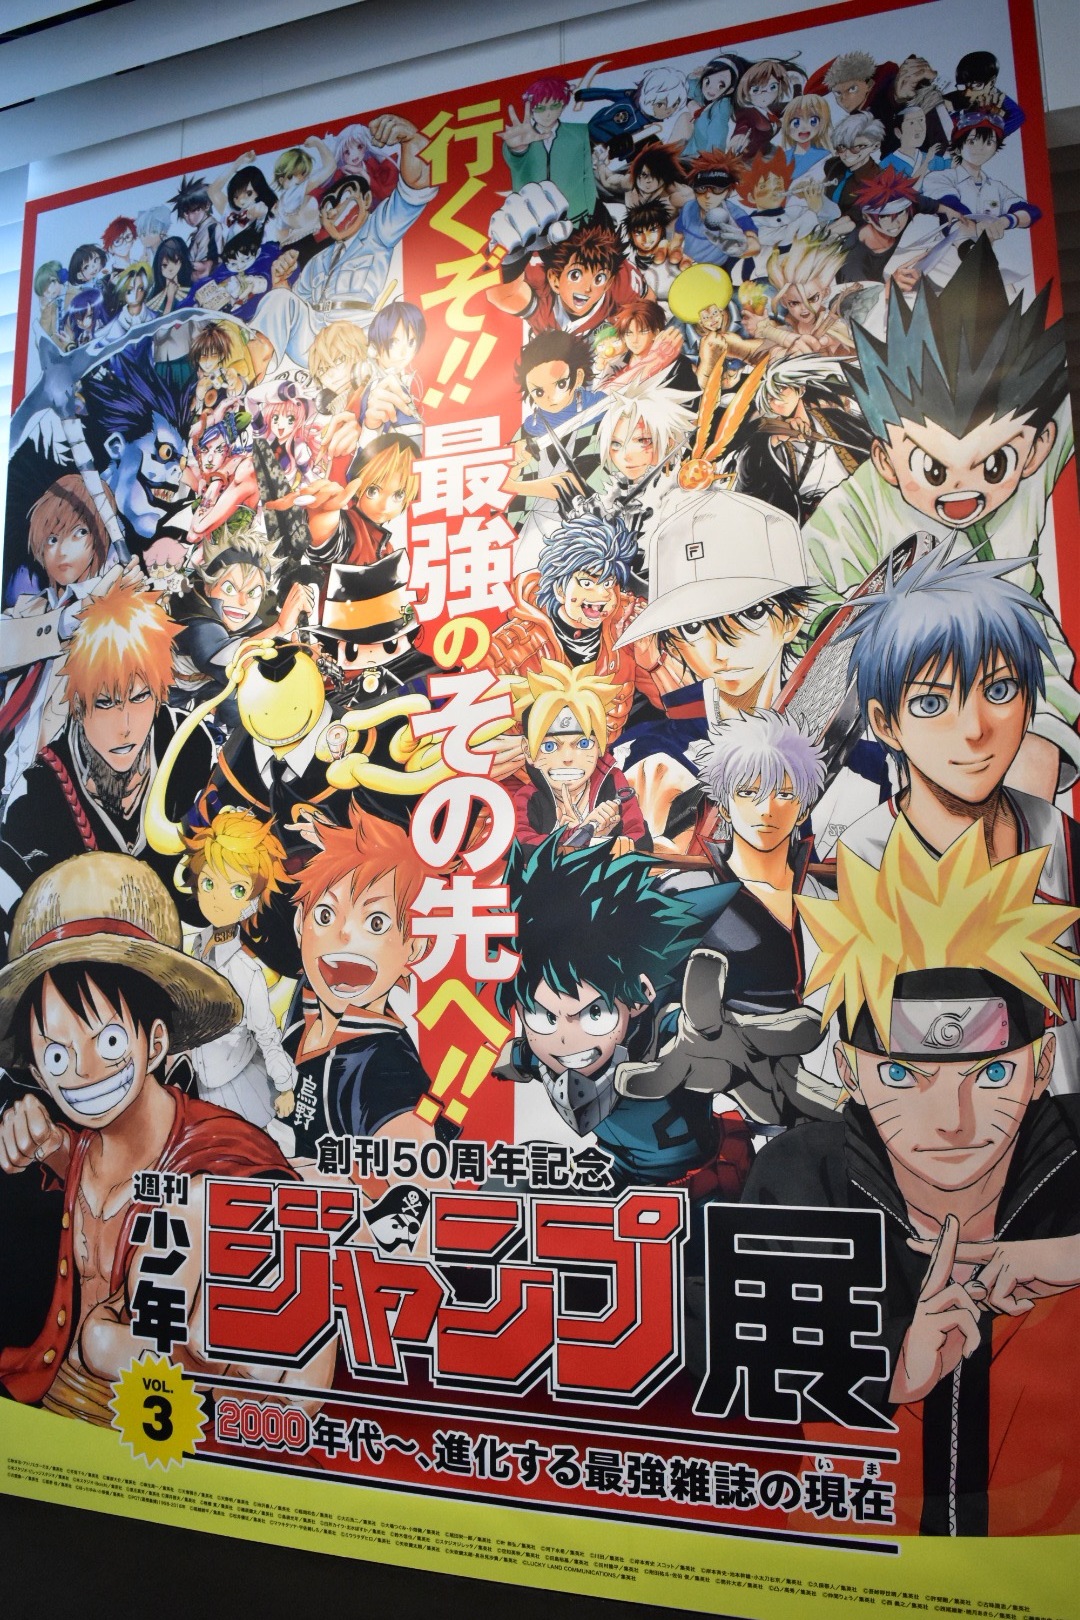 週刊少年ジャンプ展vol 3 レポート One Piece や Naruto ナルト など 原画総数440点以上 Spice Goo ニュース